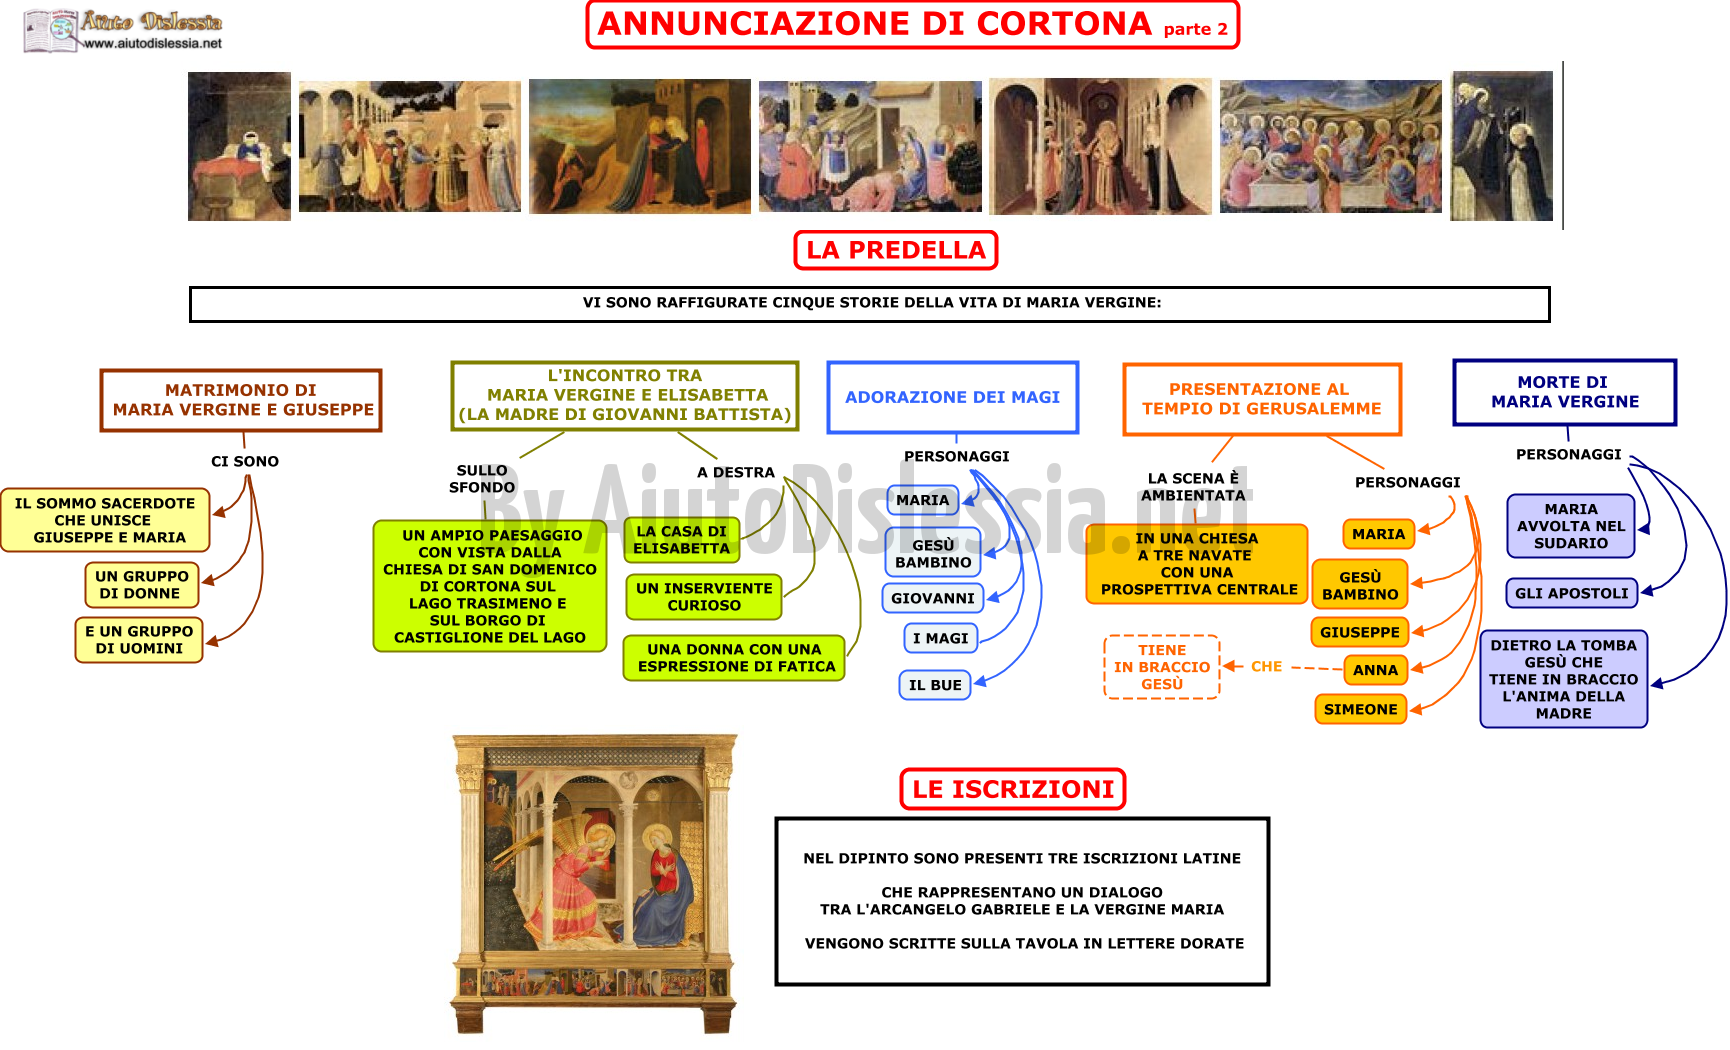 03. BEATO ANGELICO ANNUNCIAZIONE DI CORTONA (parte 2)